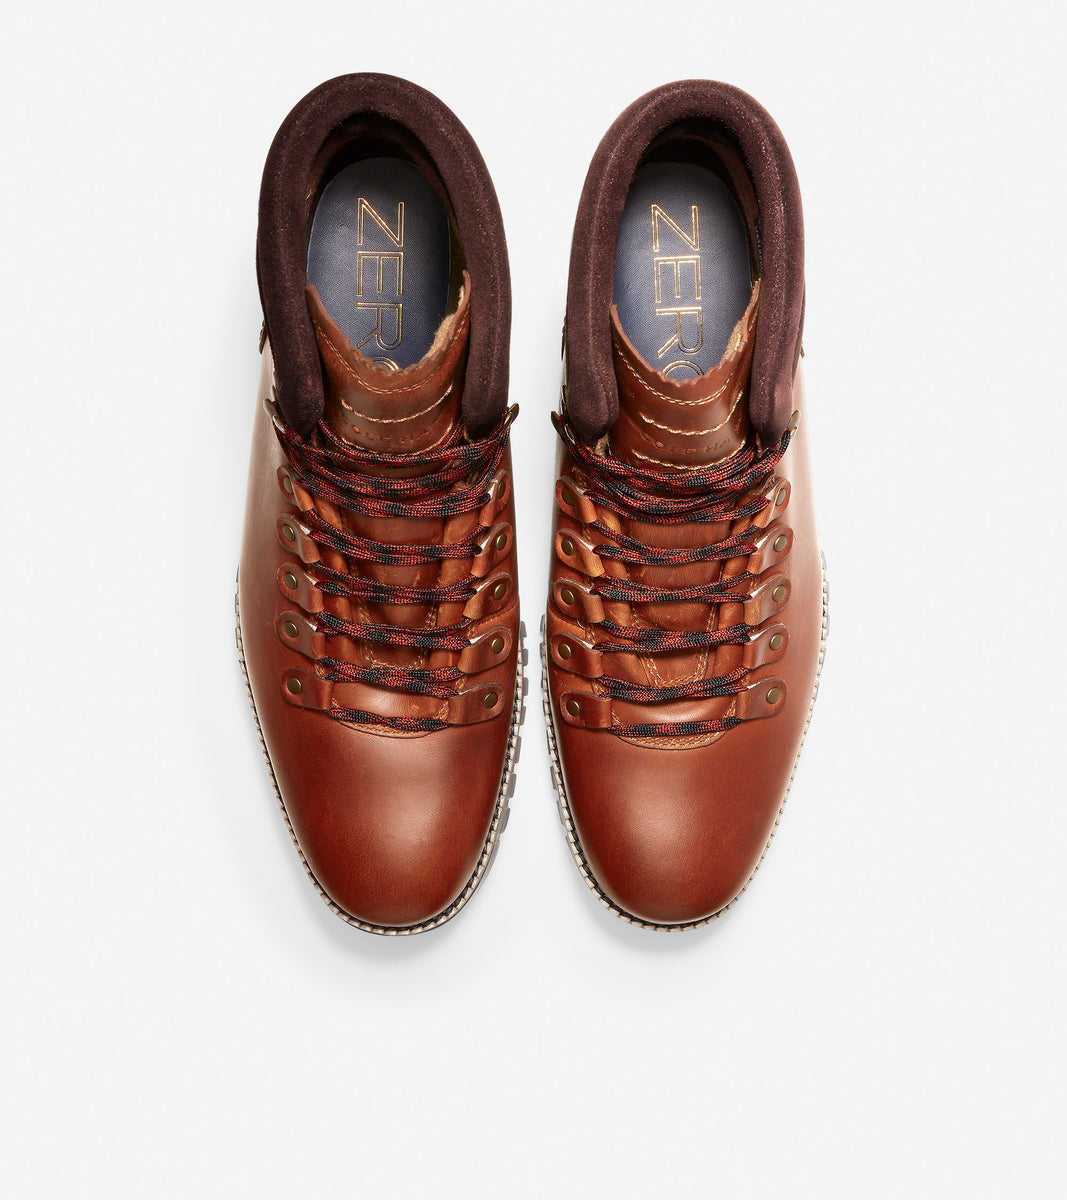 ColeHaan-ZERØGRAND Hiker Boot-c30405-British Tan Leather